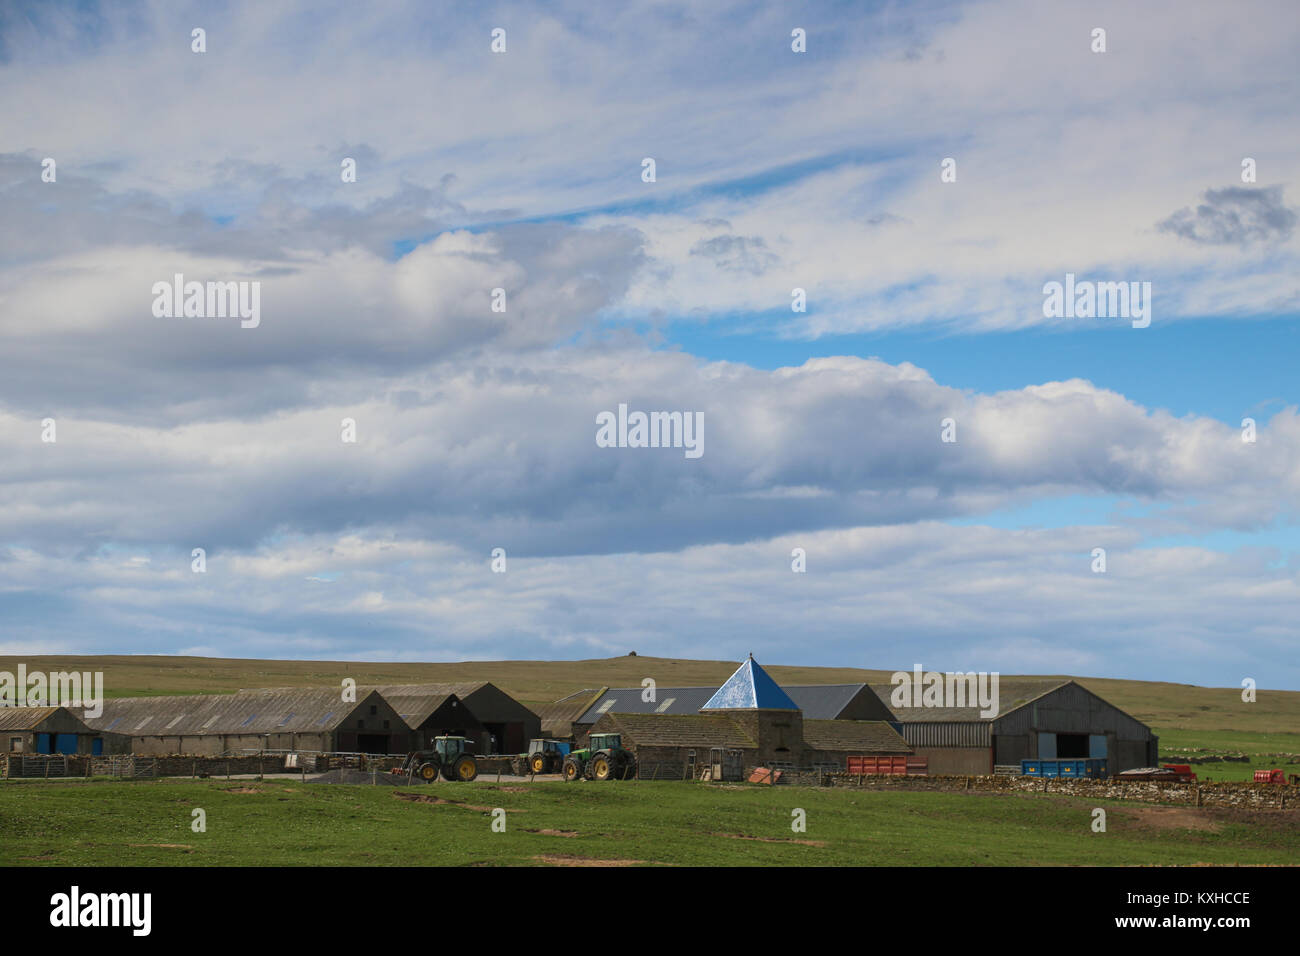 Gran trabajo, cerca de la granja de Skaill House en la isla de Orkney, Escocia, Reino Unido con muchos graneros, maquinaria agrícola, bajo un enorme azul cielo lleno de nubes. Foto de stock